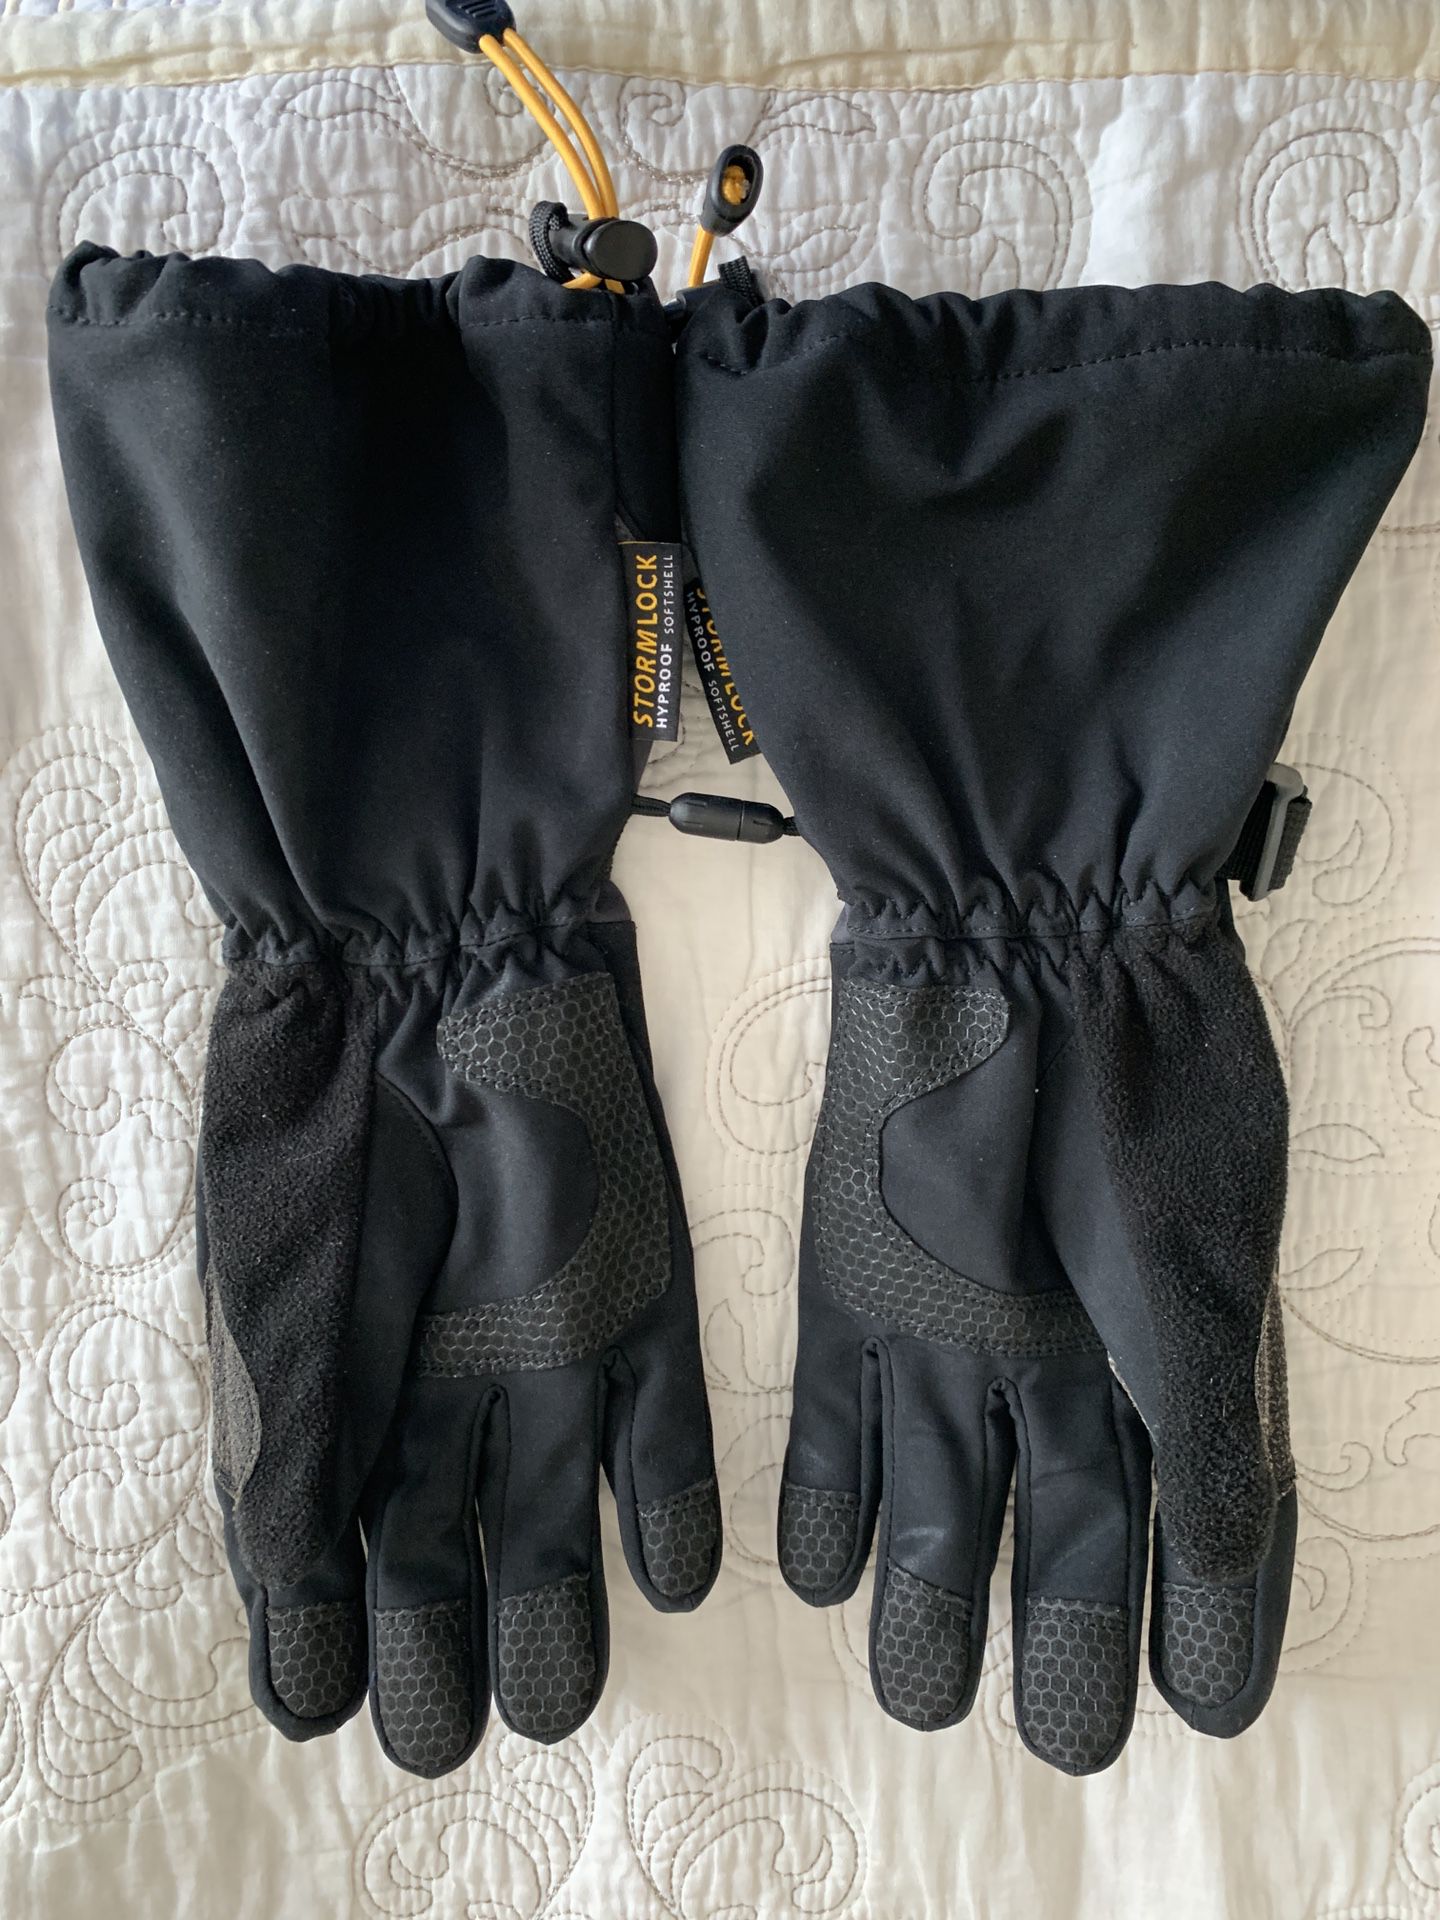 Mens medium Jack Wolfskin Winter Snowboard Ski gloves